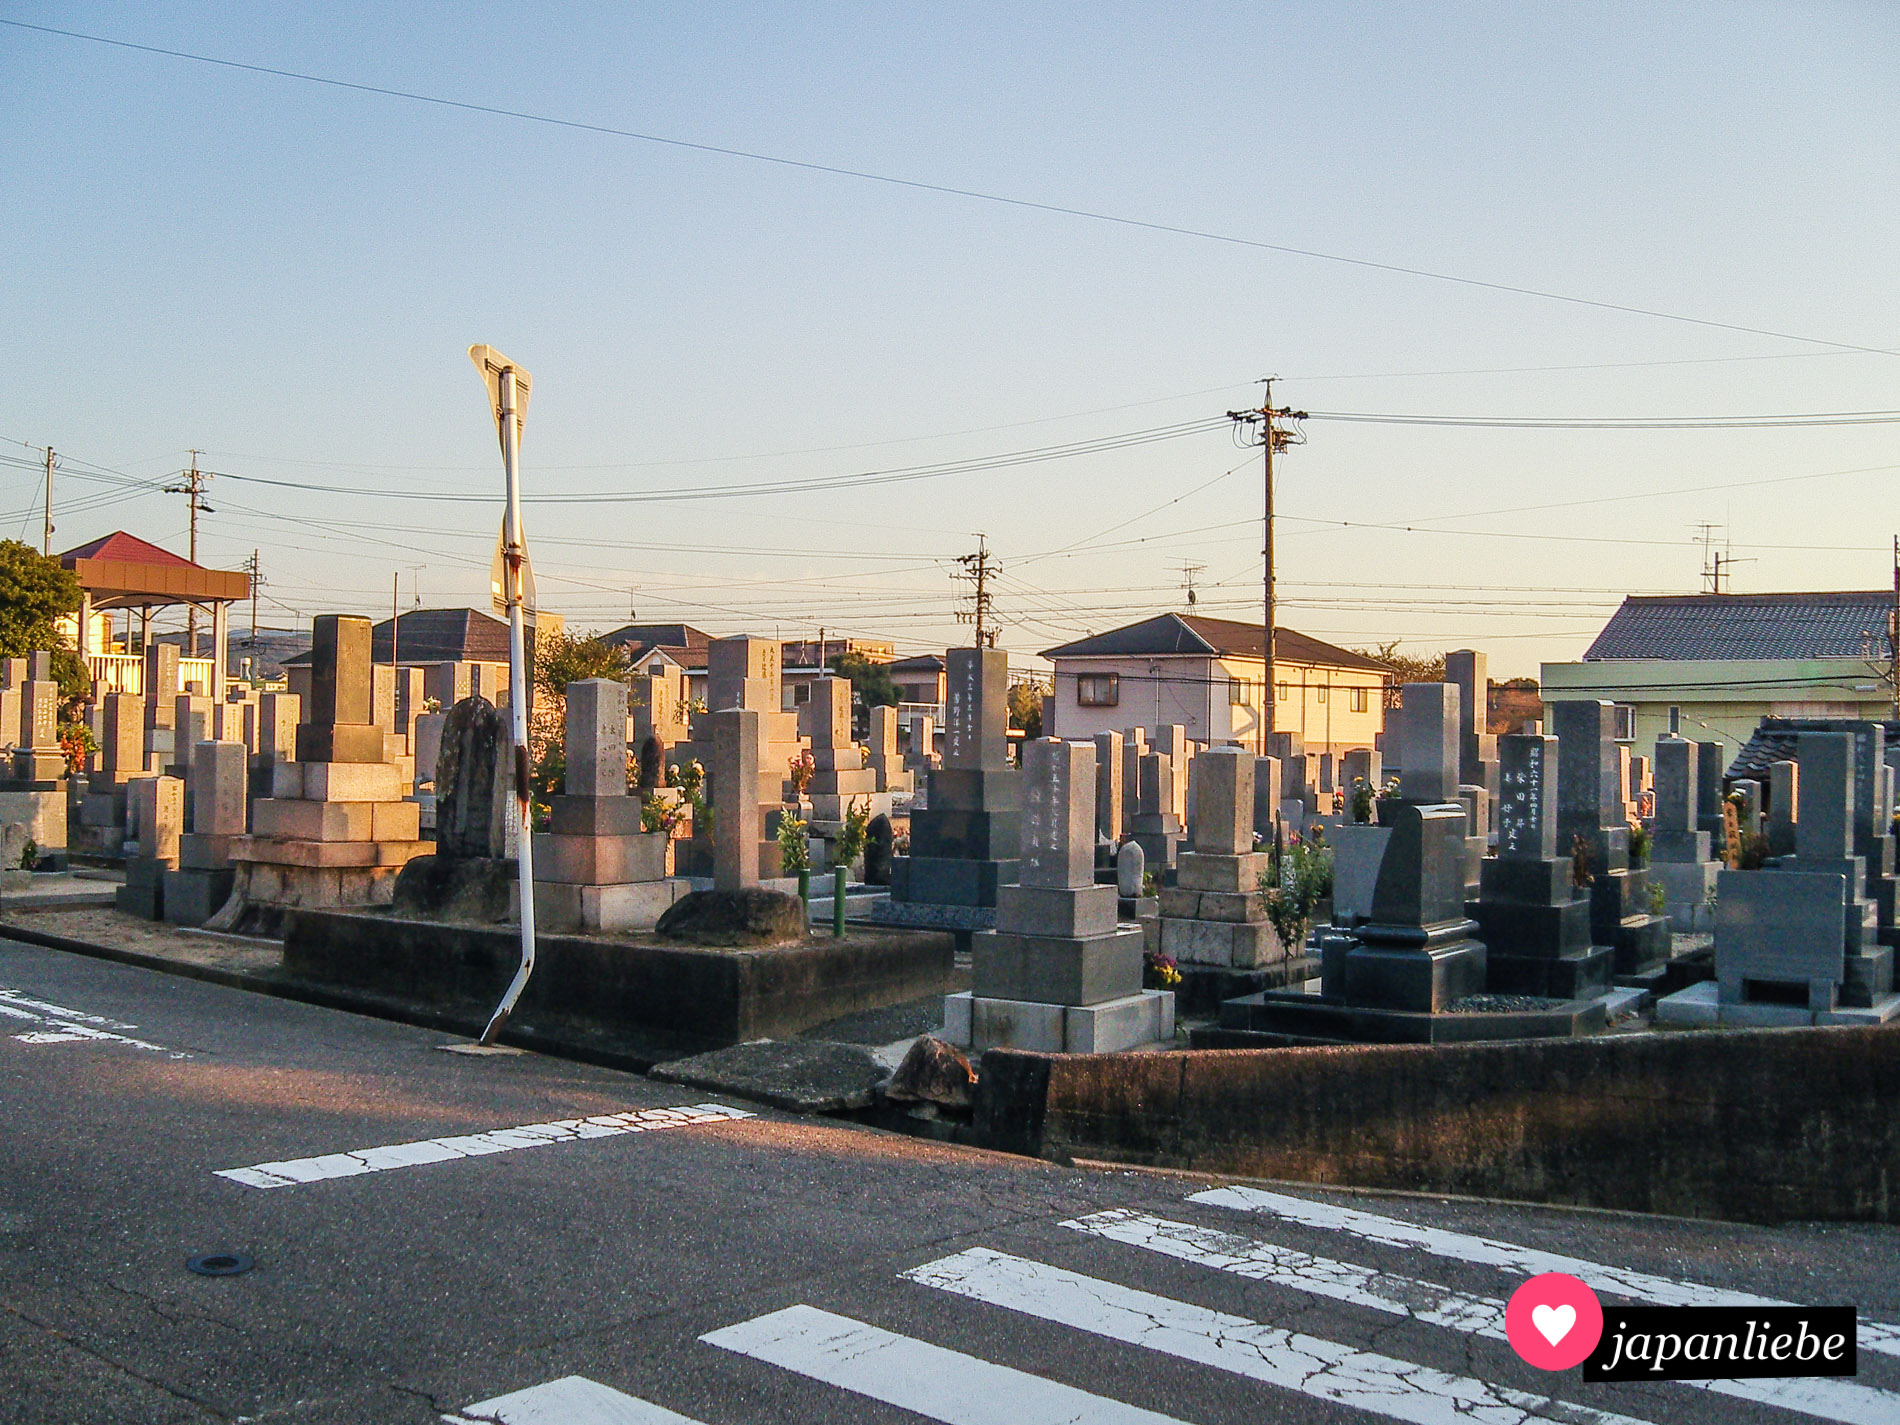 Dieser Friedhof in Okazaki liegt an vier Seiten umgeben von Straßen direkt in einem Wohngebiet.